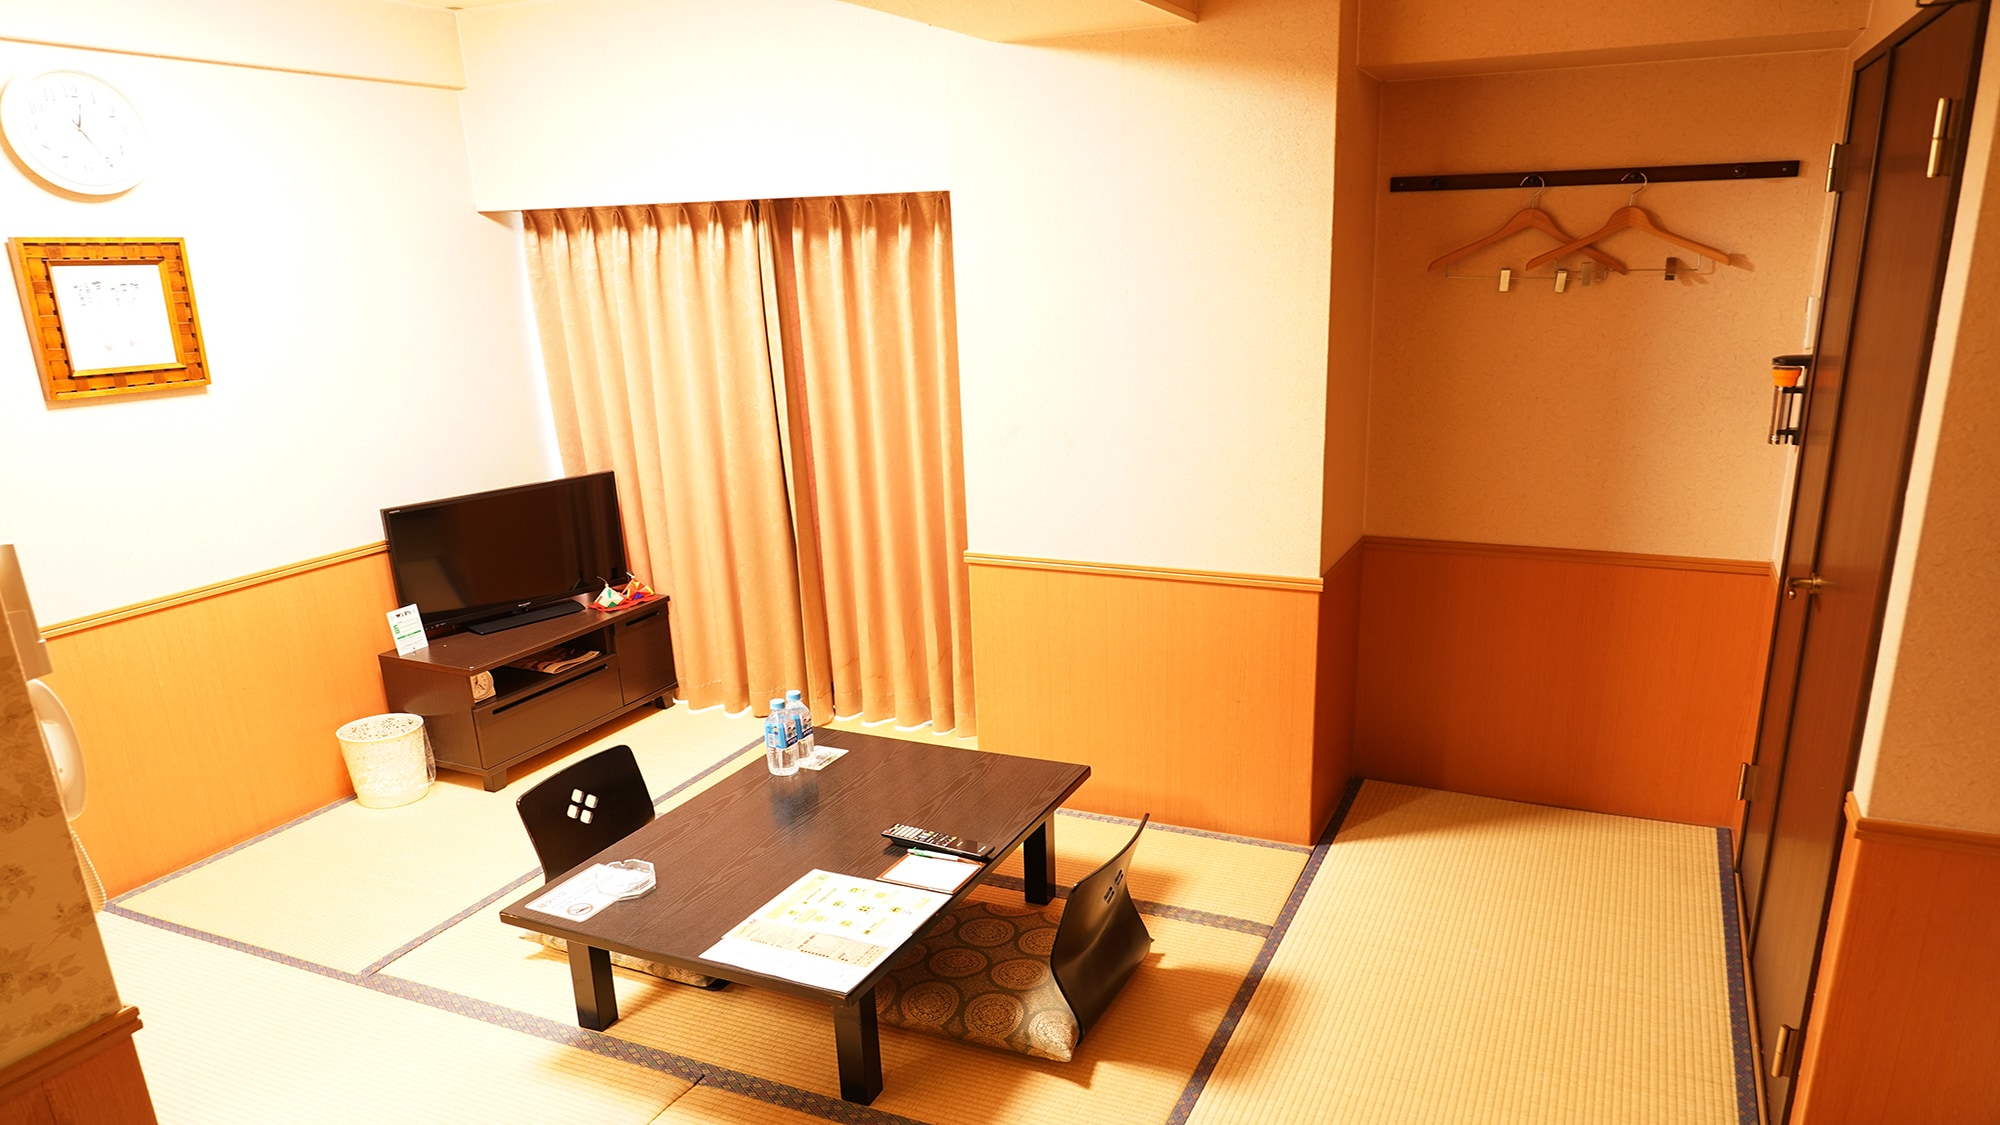 Kamar bergaya Jepang 6 tikar tatami